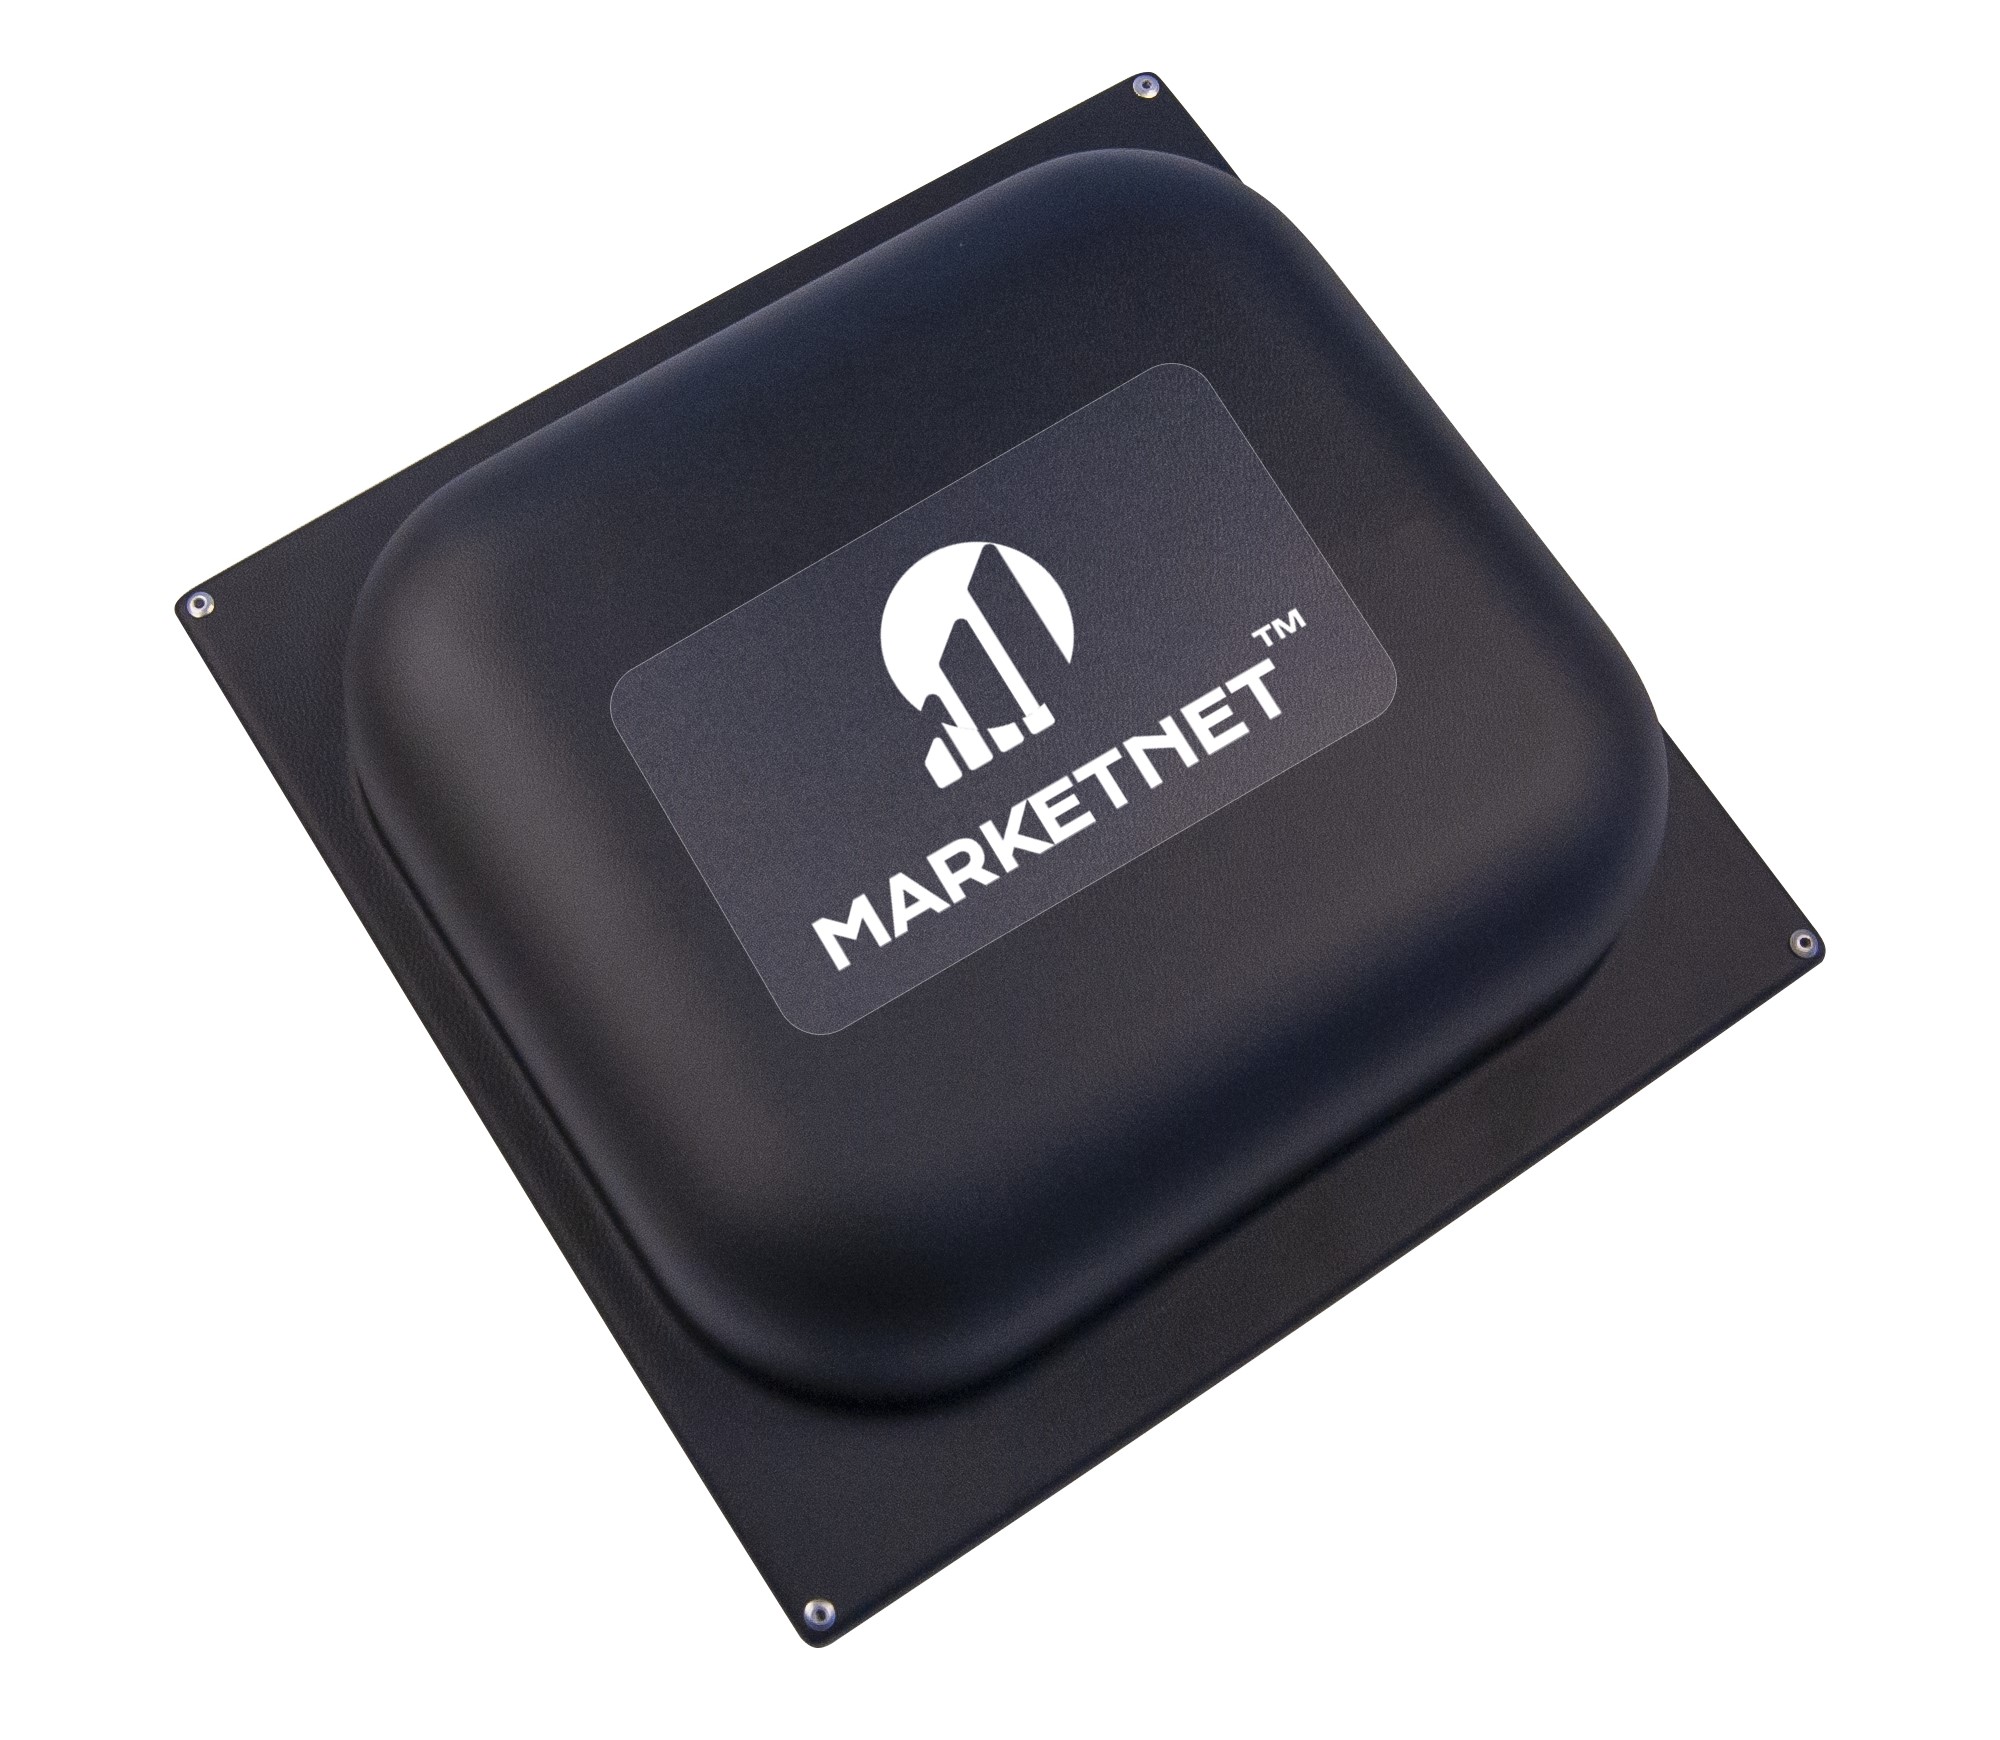 Антенна MARKETNET Square 18Дб - Усиление 3G/4G LTE сигнала всех операторов Украины - Киевстар, Водафон, Лайфселл. Фото - вид спереди. Купить антенну на сайте Маркетнет